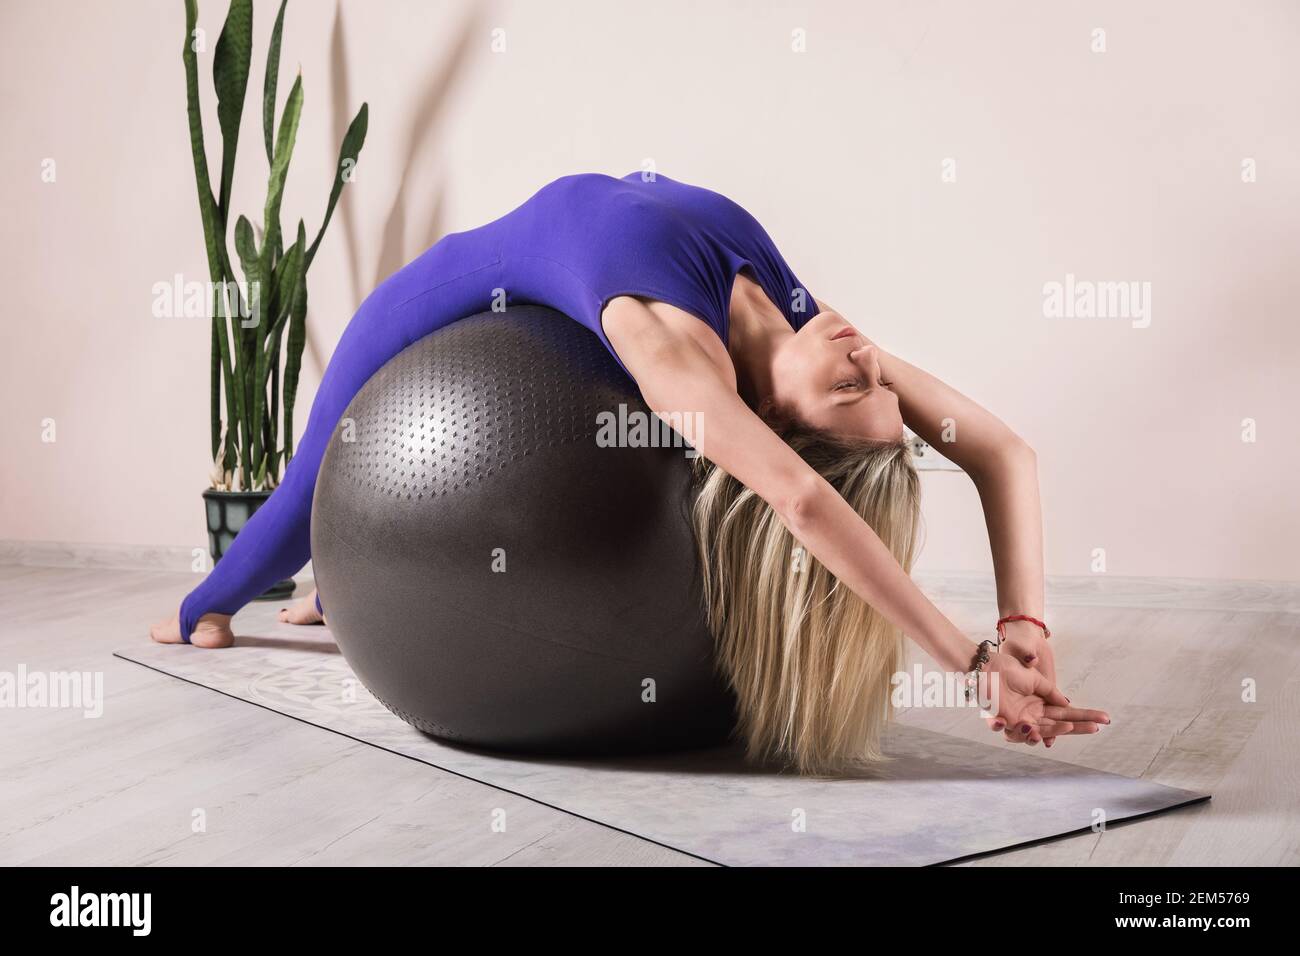 Mujer rubia en un mono deportivo cerrado de color azul practicando yoga se  sienta en un fitball con los brazos levantados en una habitación cerca de  la pared